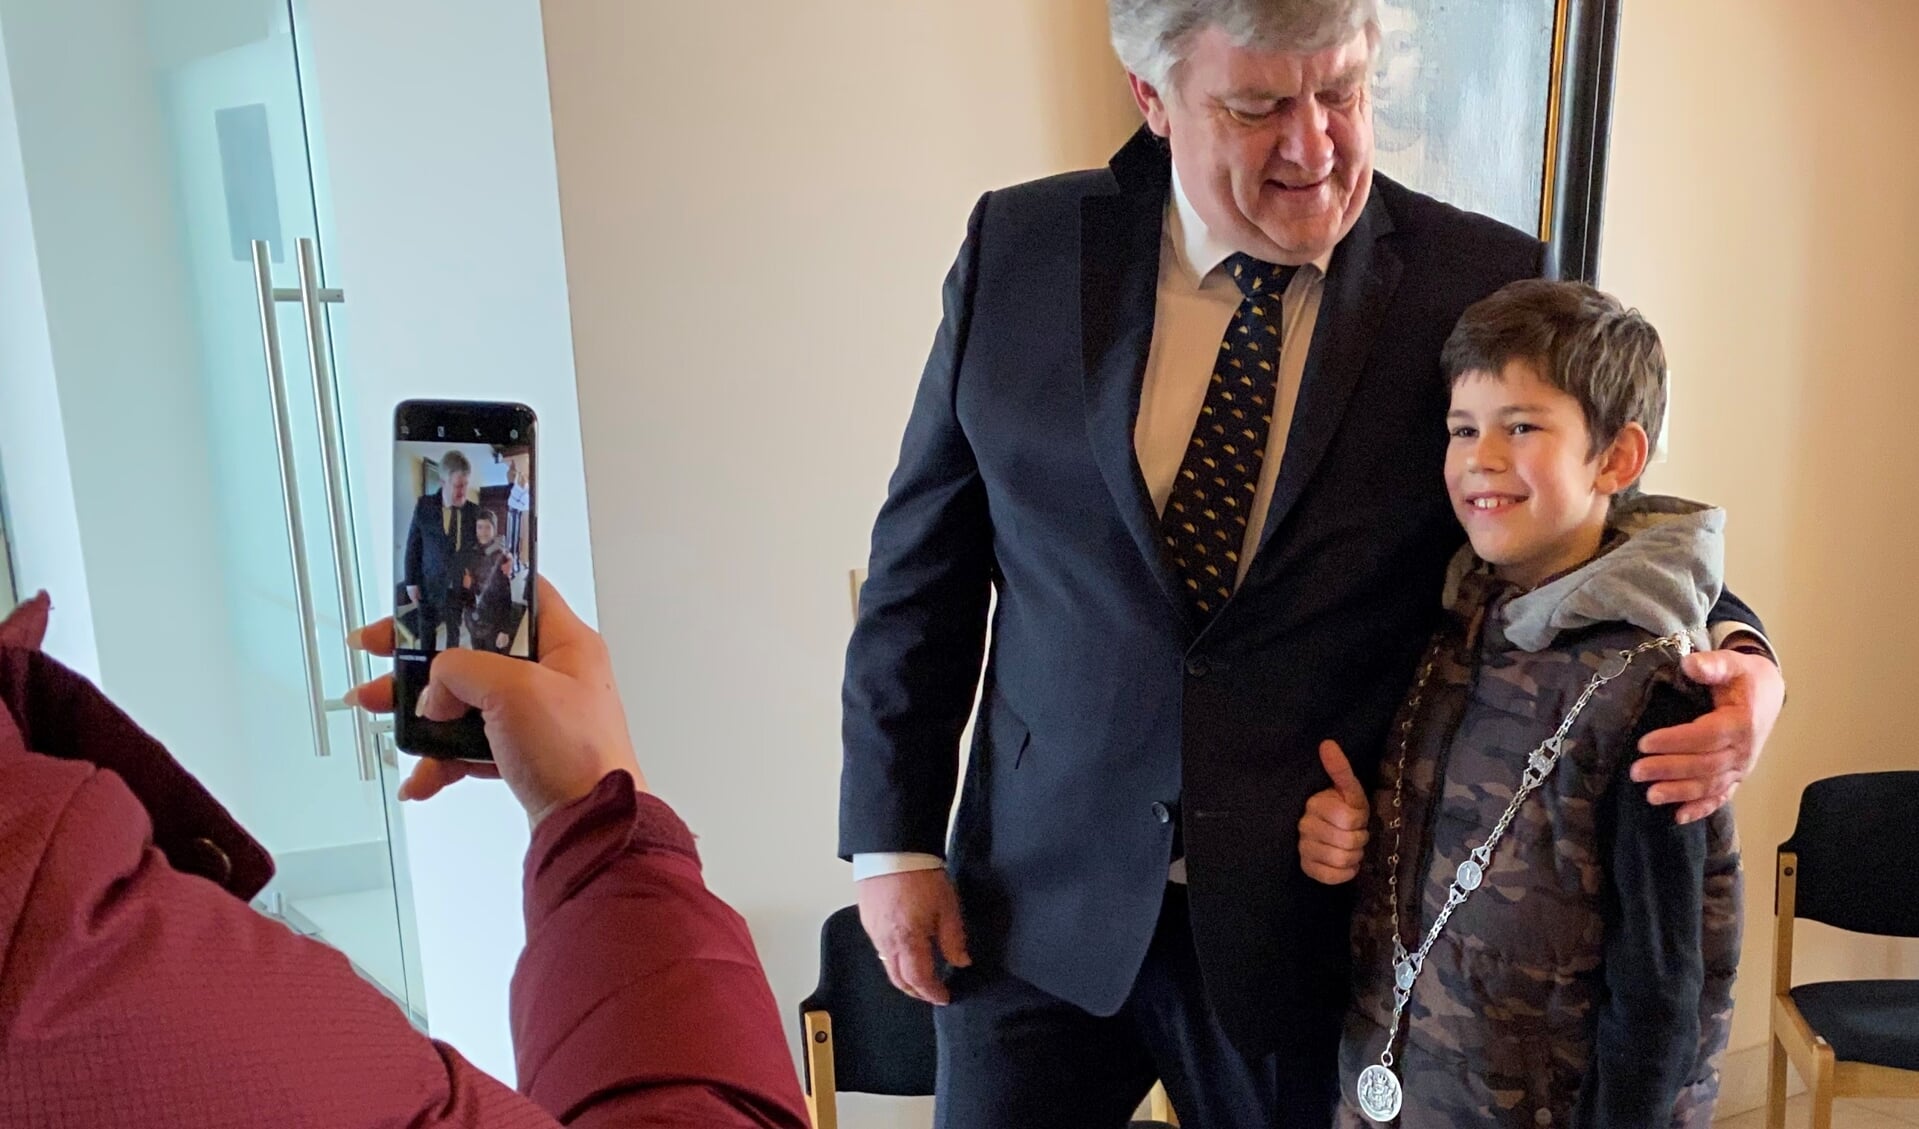 Artjom wilde graag met burgemeester Lambooij op de foto. Lambooij deed hem de ambtsketting om en de jongen stond stralend op de foto.